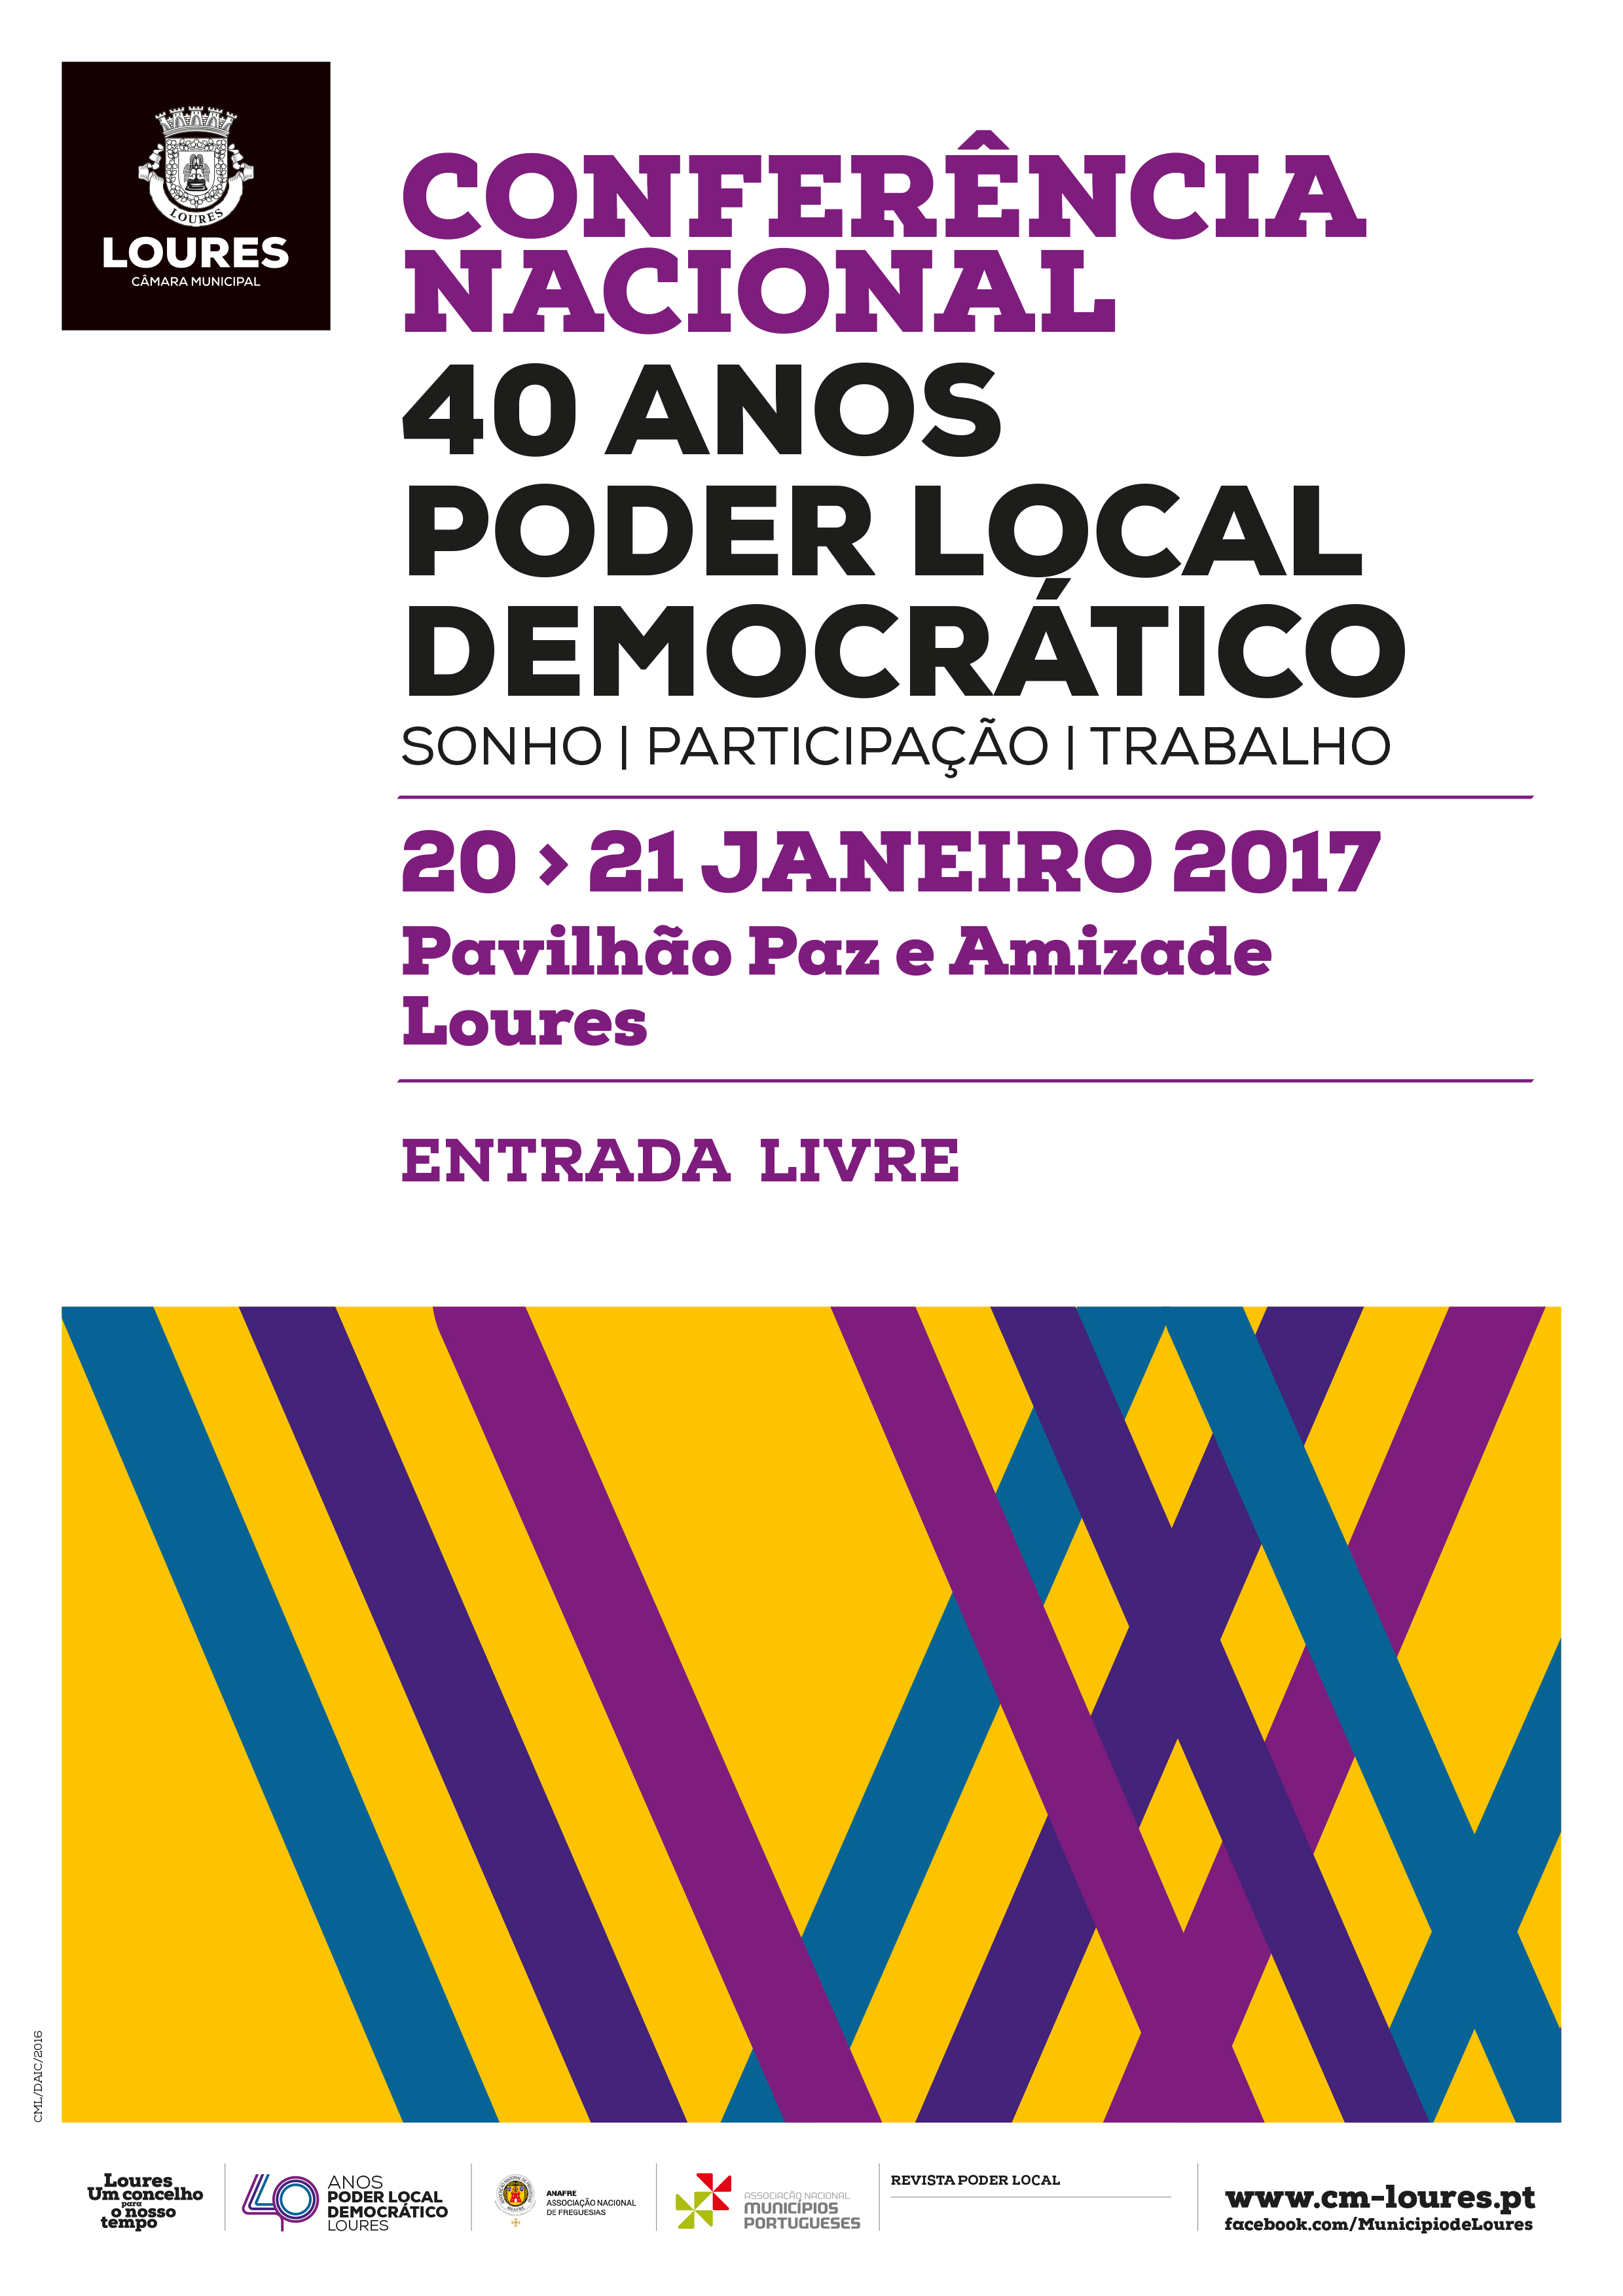 20 e 21 janeiro - Conferência Nacional Poder Local Democrático